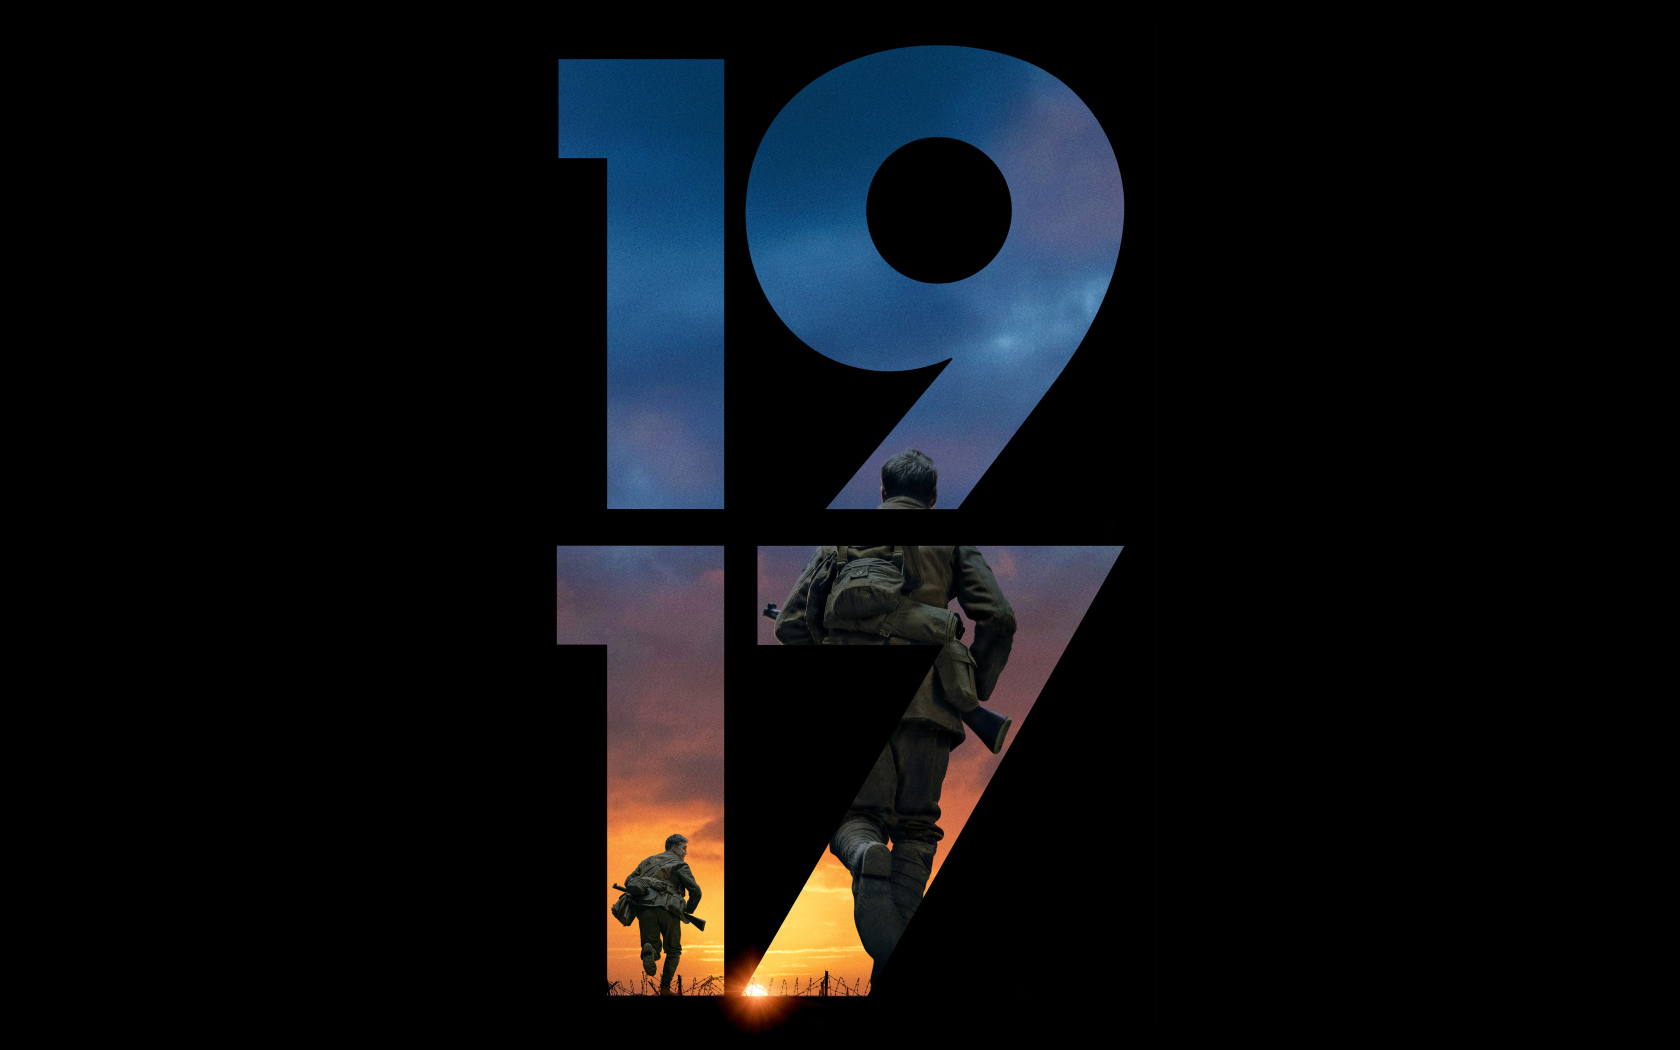 Постер нового военного фильма  1917 на черном фоне